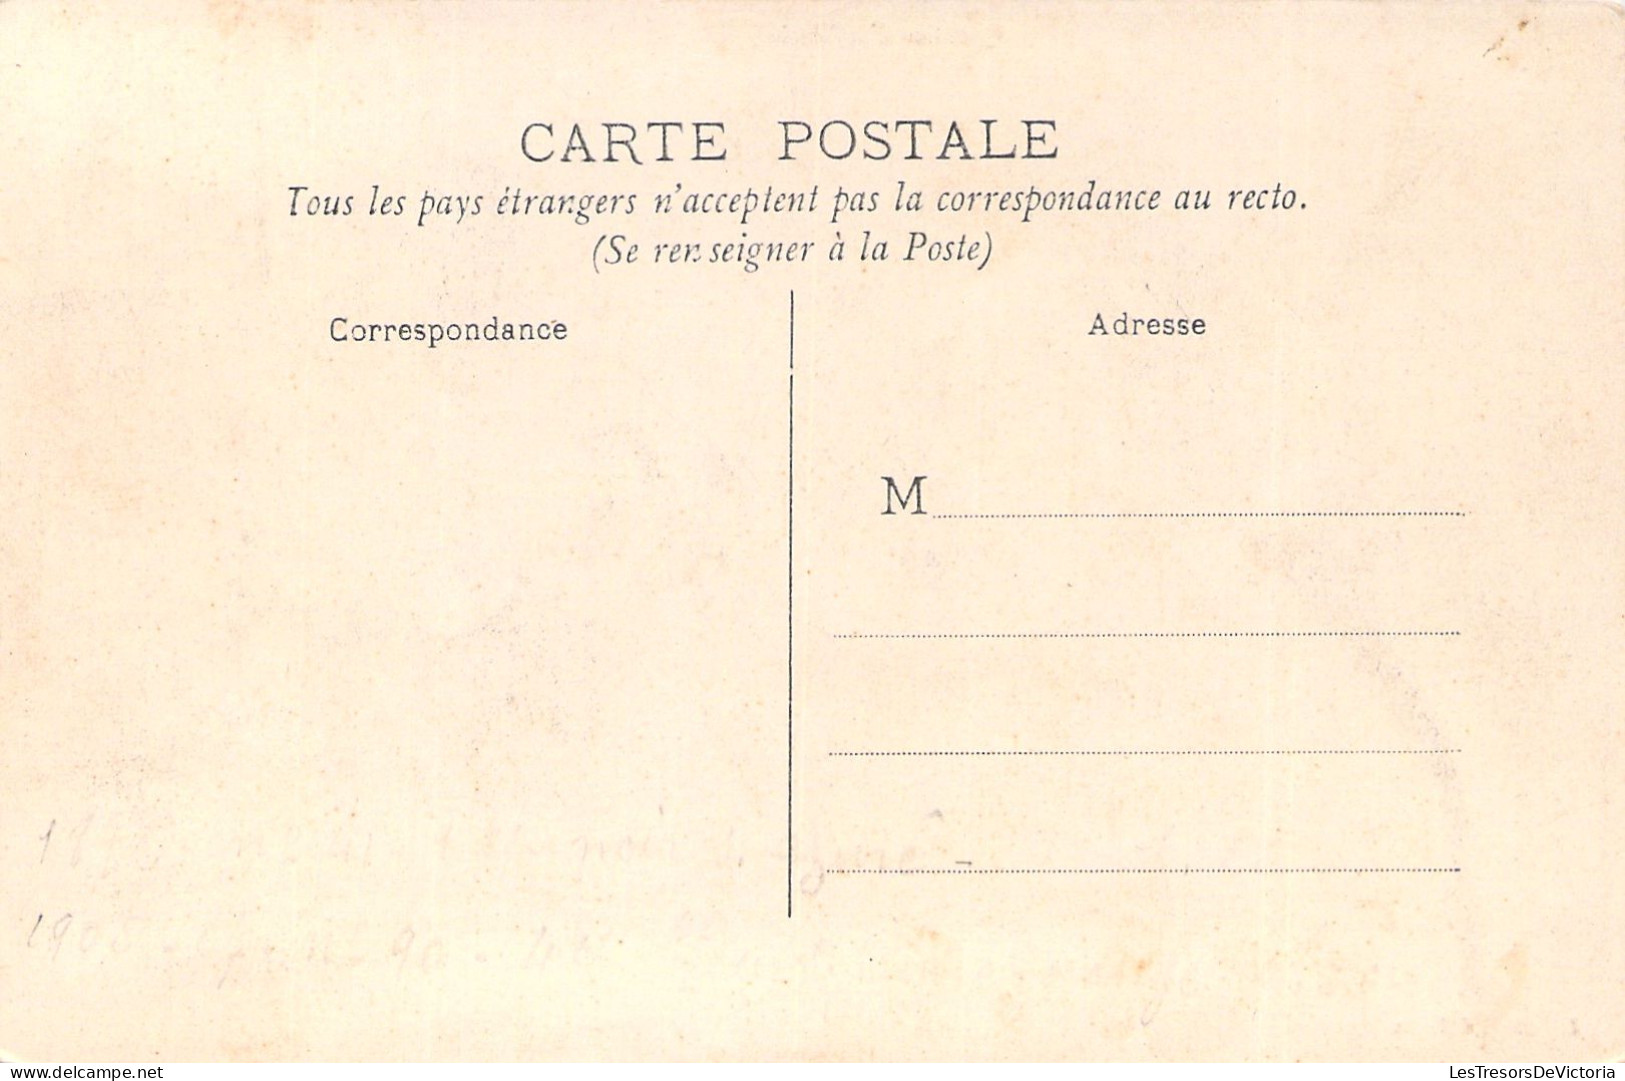 Nouvelle Calédonie - Quartier D'artillerie - Noumea - Chevaux  -  Carte Postale Ancienne - Nueva Caledonia